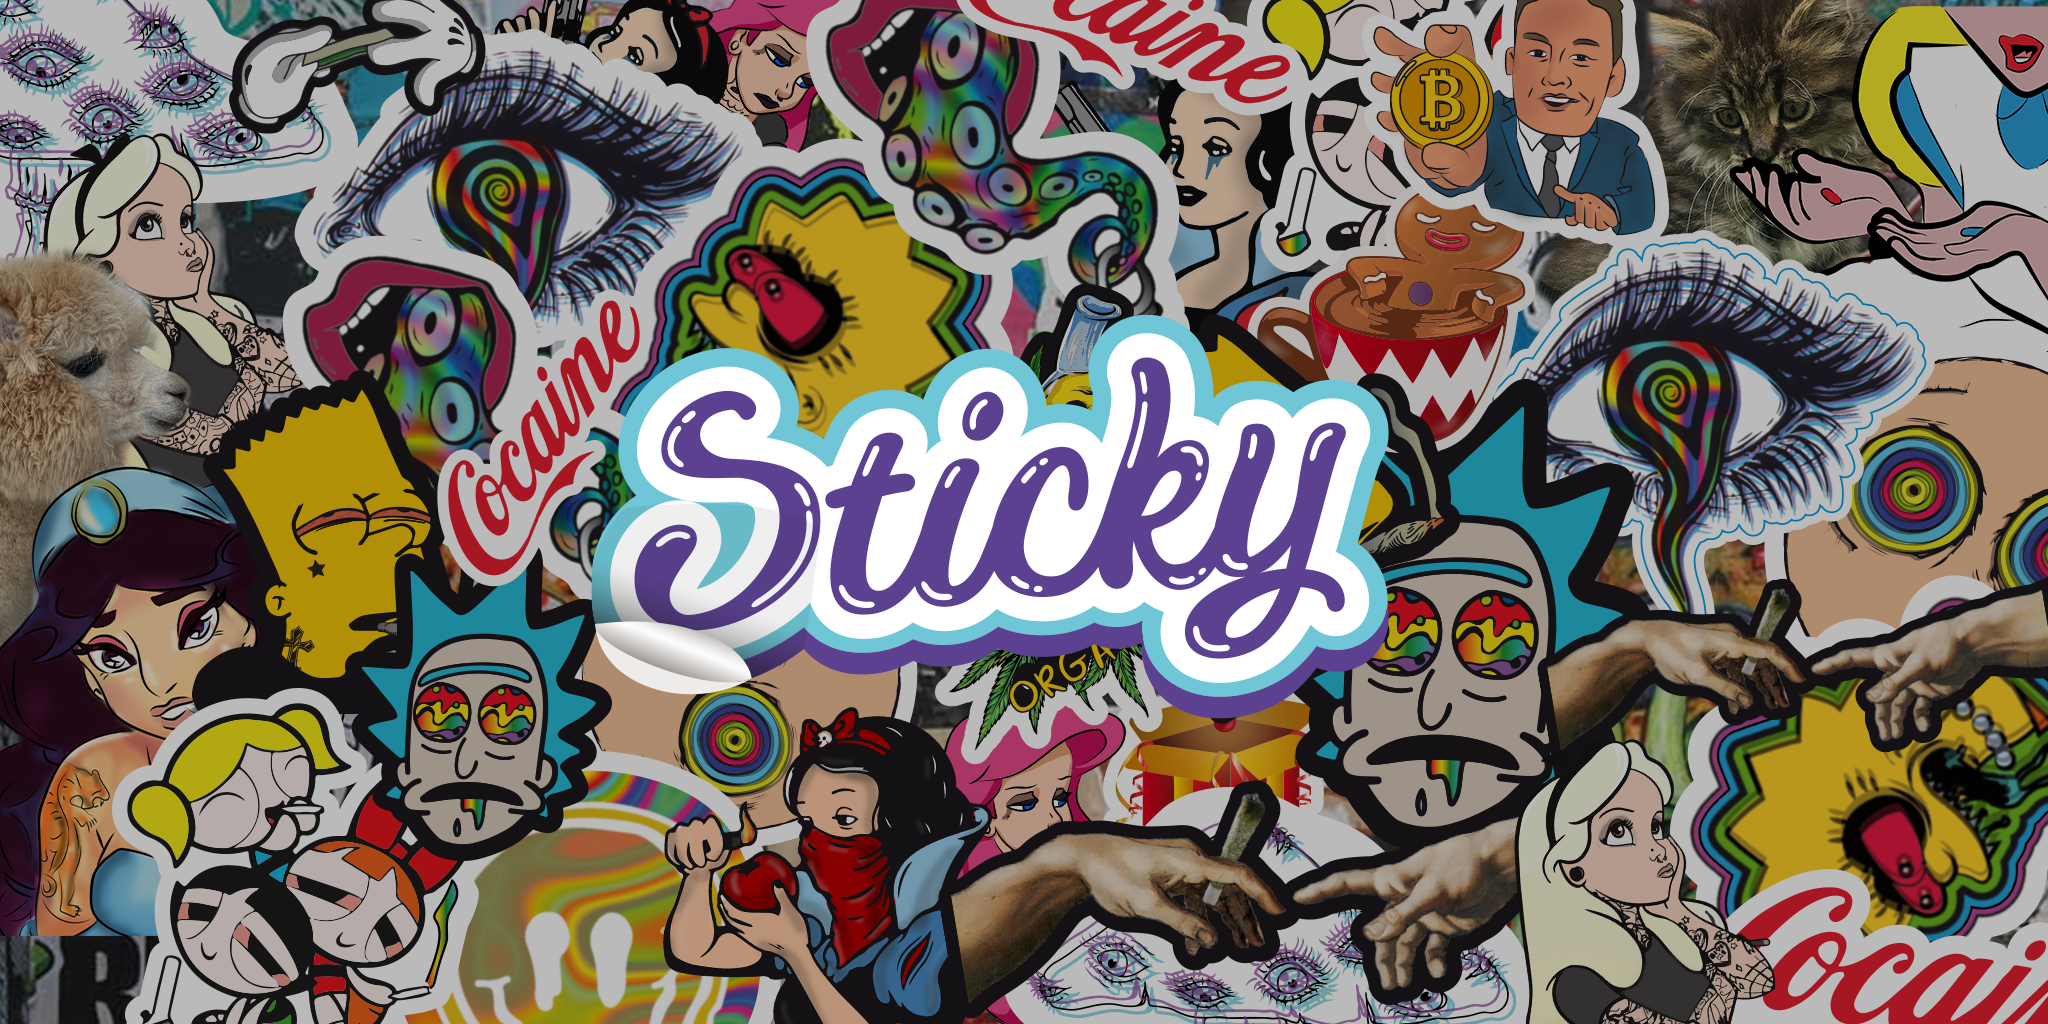 Sticky.pl